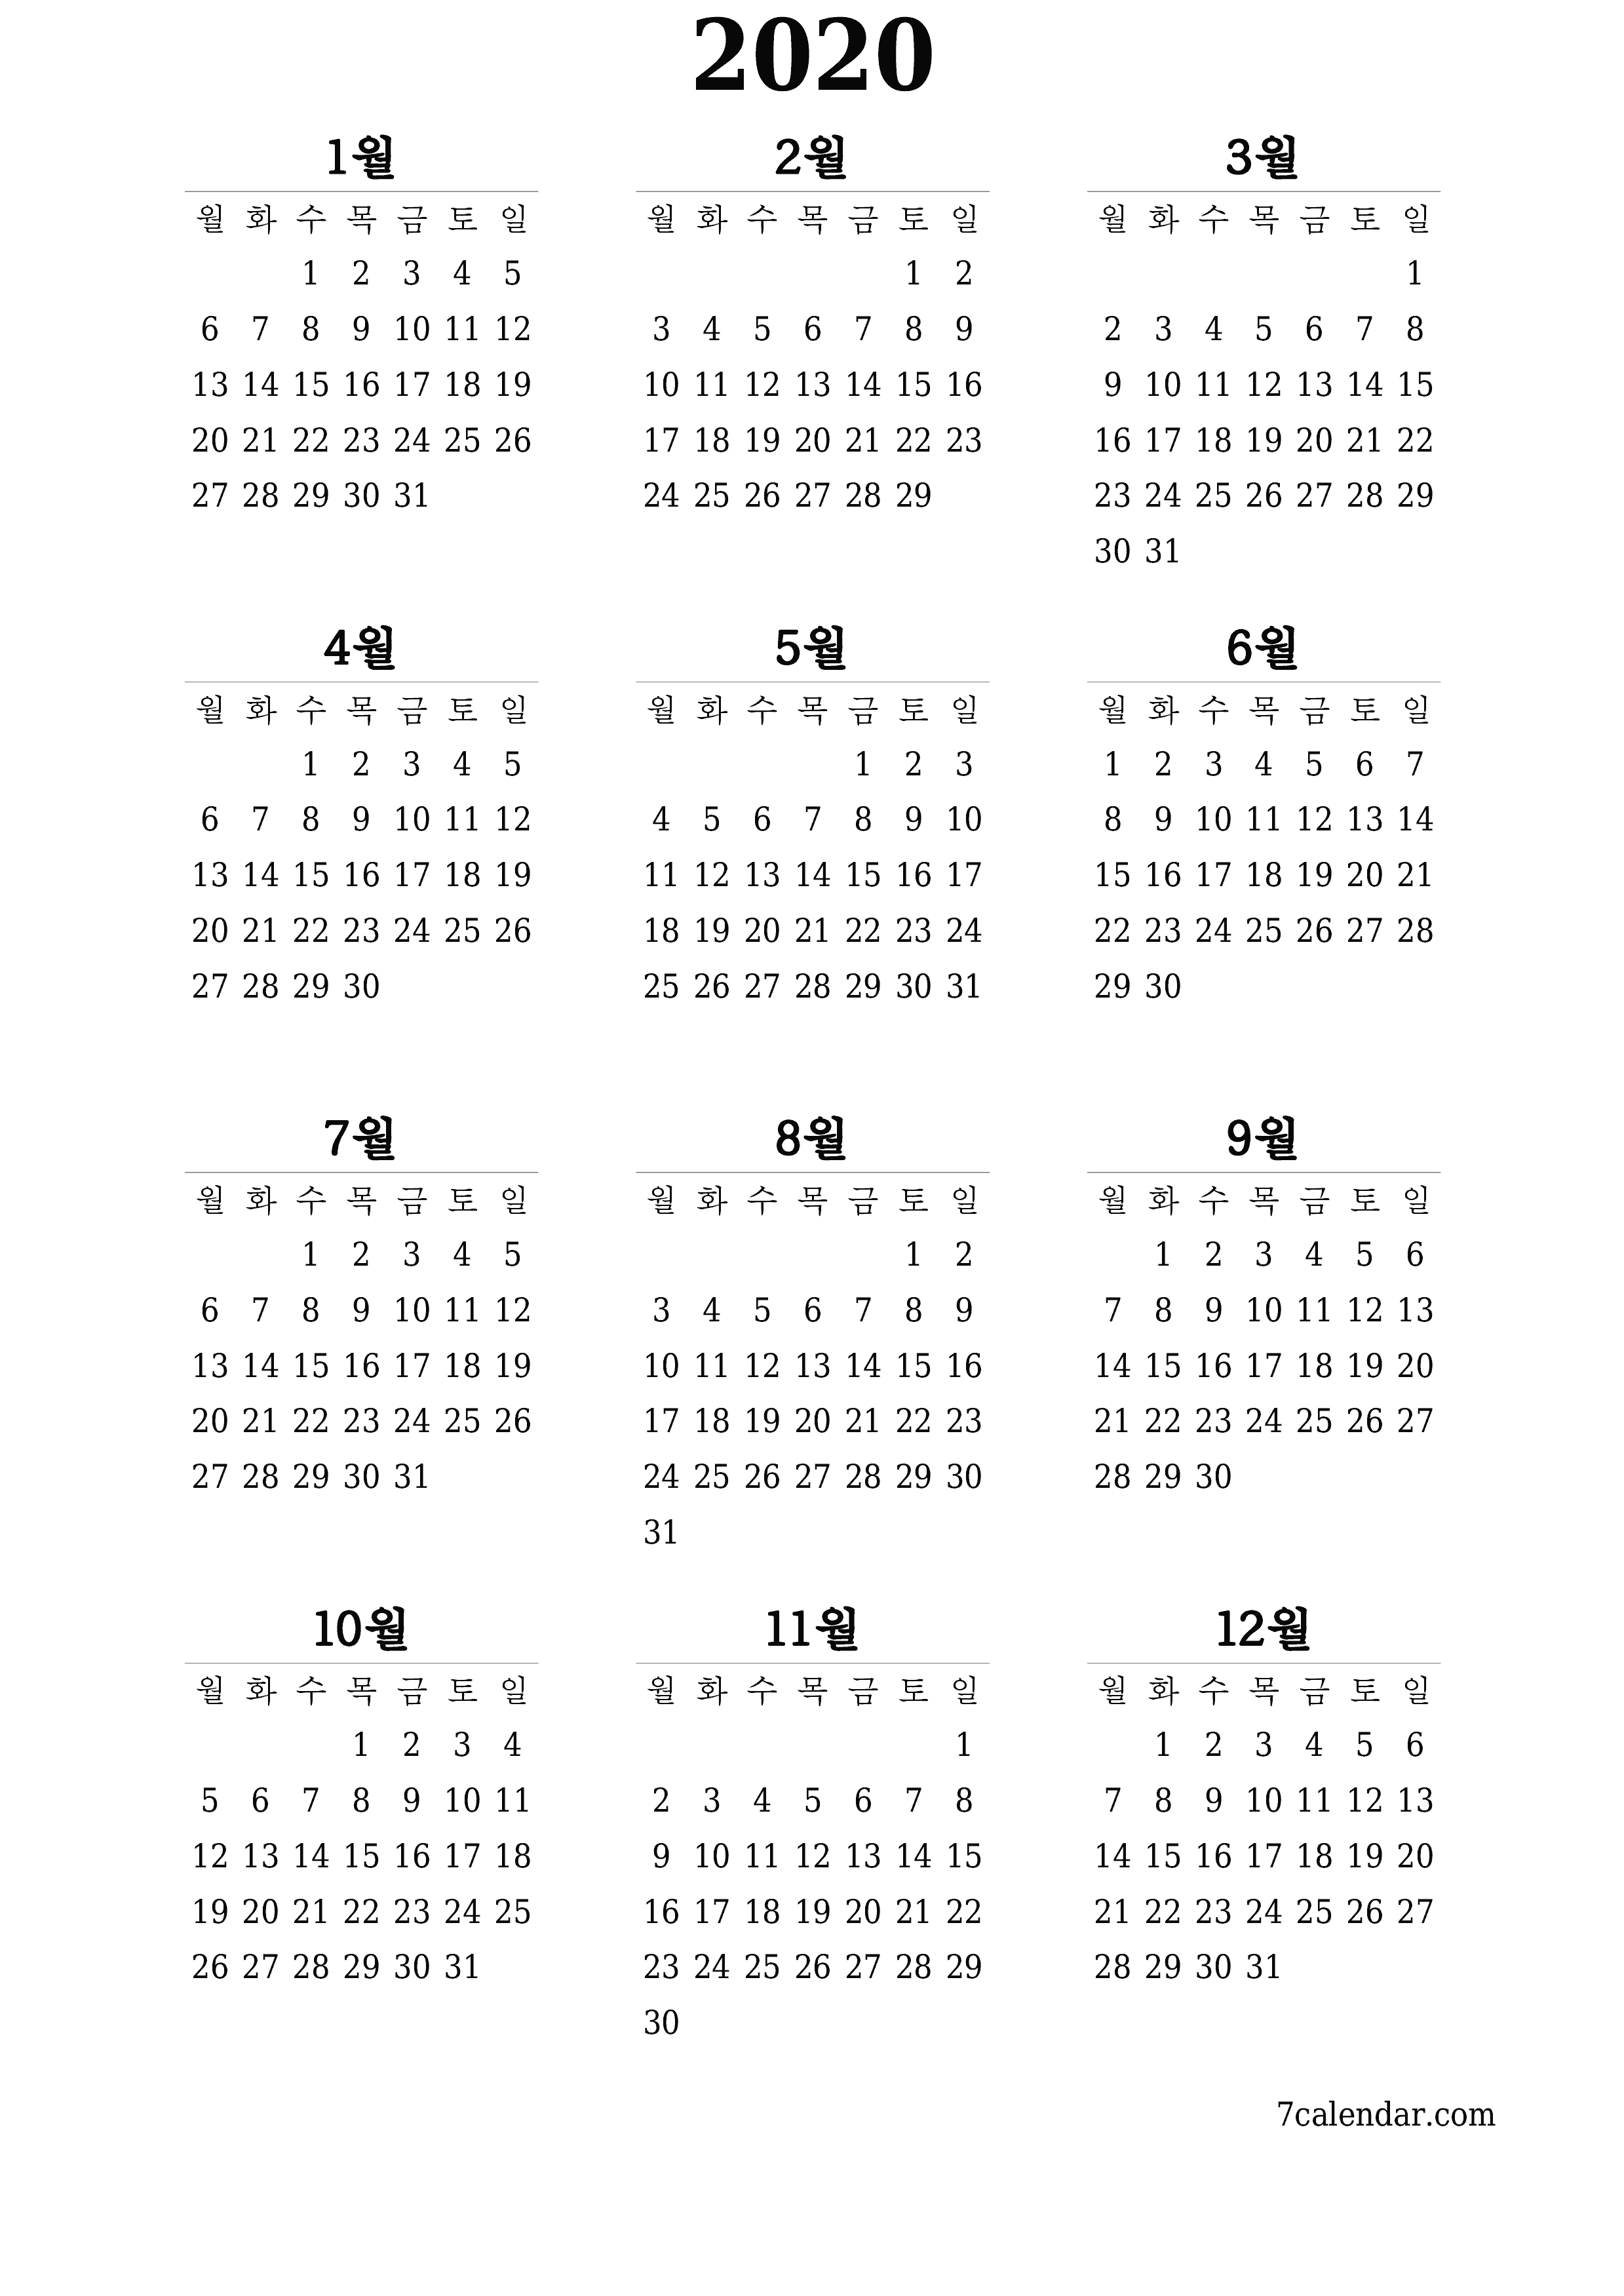 메모가있는 2020 년의 연간 플래너 캘린더 비우기, 저장하고 PDF PNG Korean-7calendar.com으로 인쇄